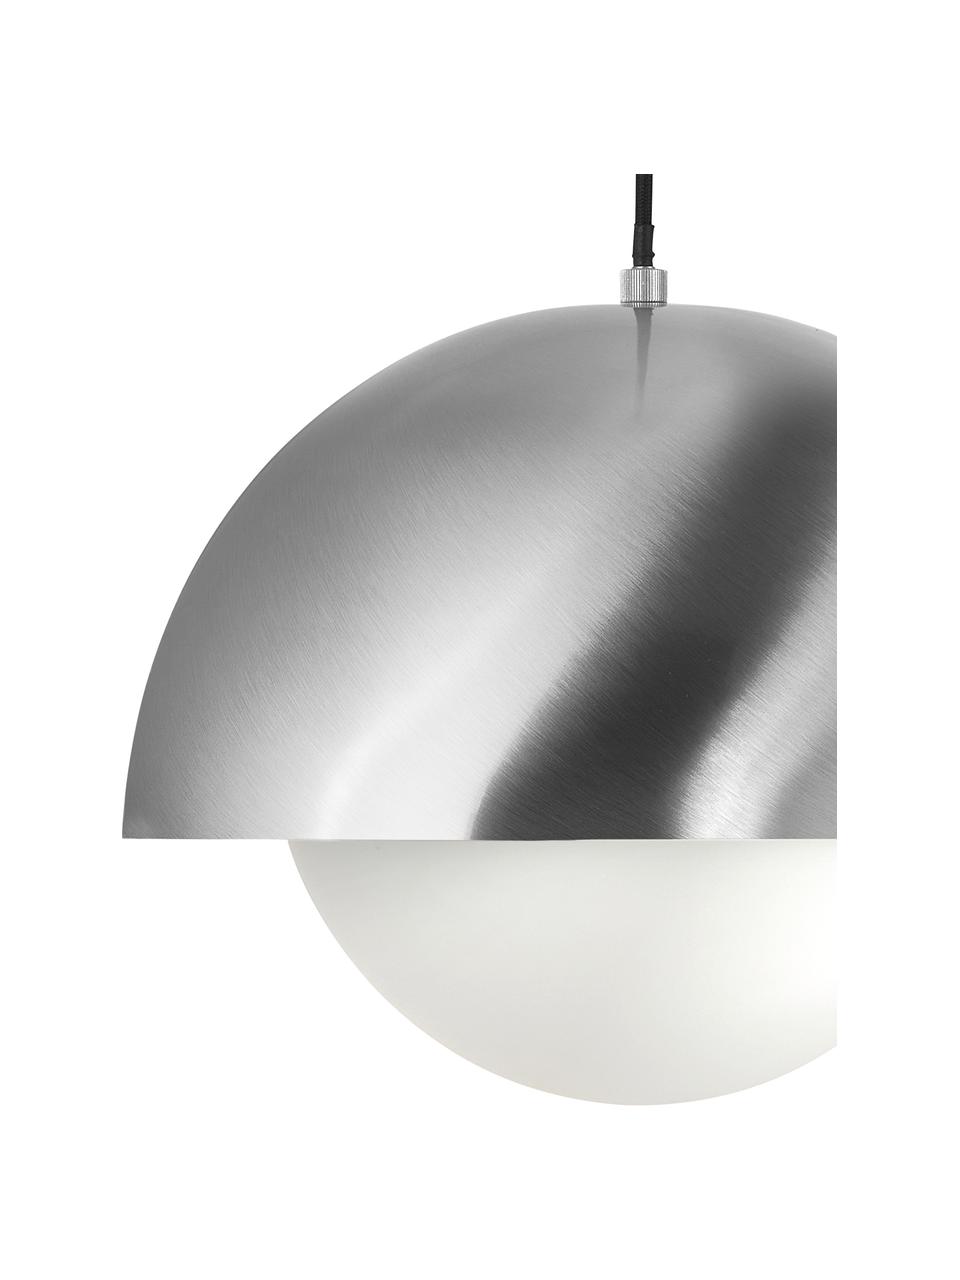 Hanglamp Lucille in zilverkleur, Baldakijn: geborsteld metaal, Wit, zilverkleurig, Ø 35 x H 30 cm